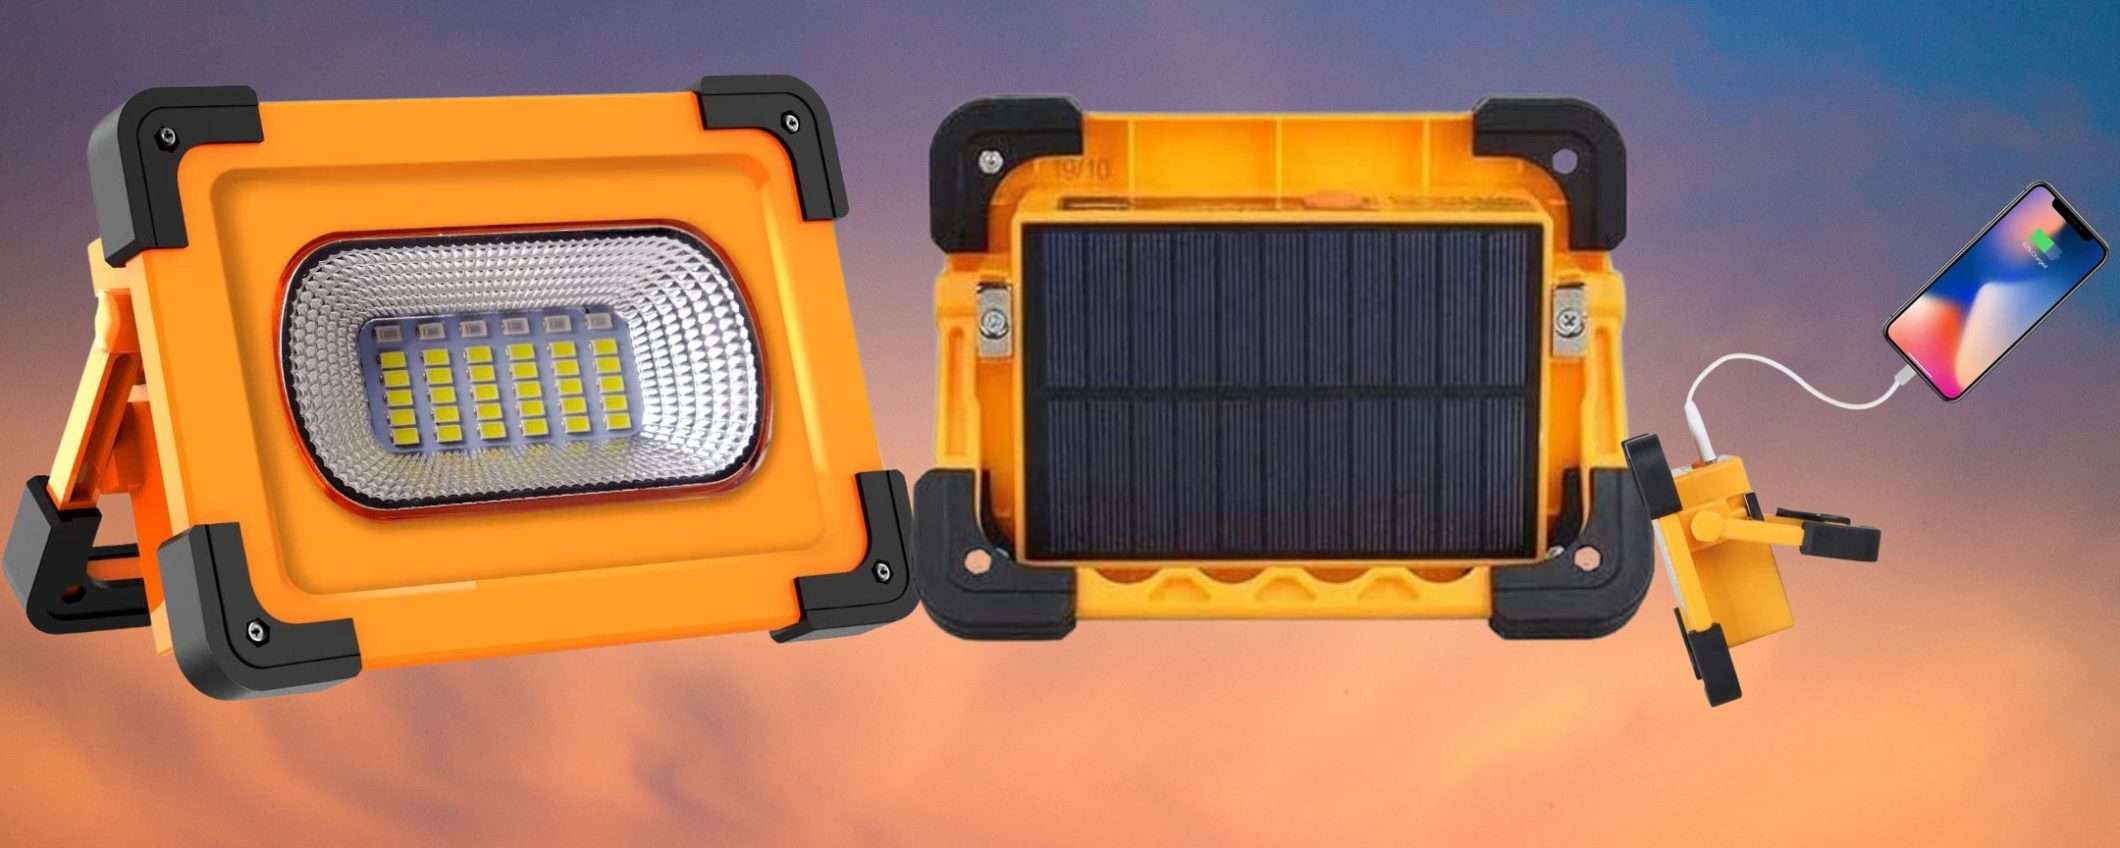 Faro solare portatile 60W con powerbank integrato: GENIALATA a 16€ (Amazon)